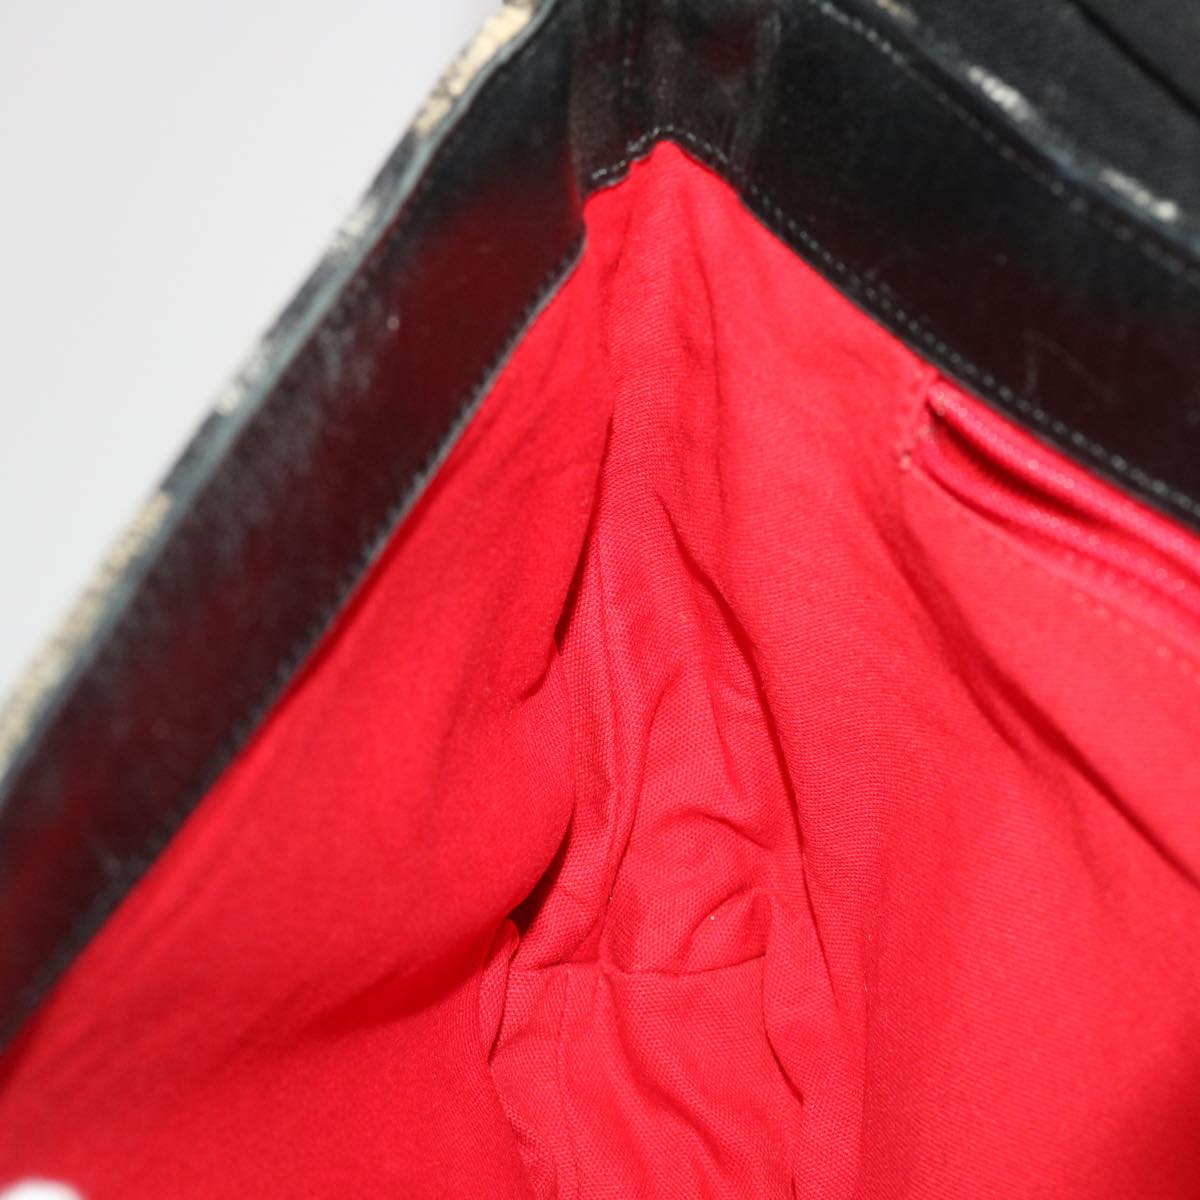 Burberrys Nova Check Blue Label Shoulder Bag Wool Brown Black Auth 49101